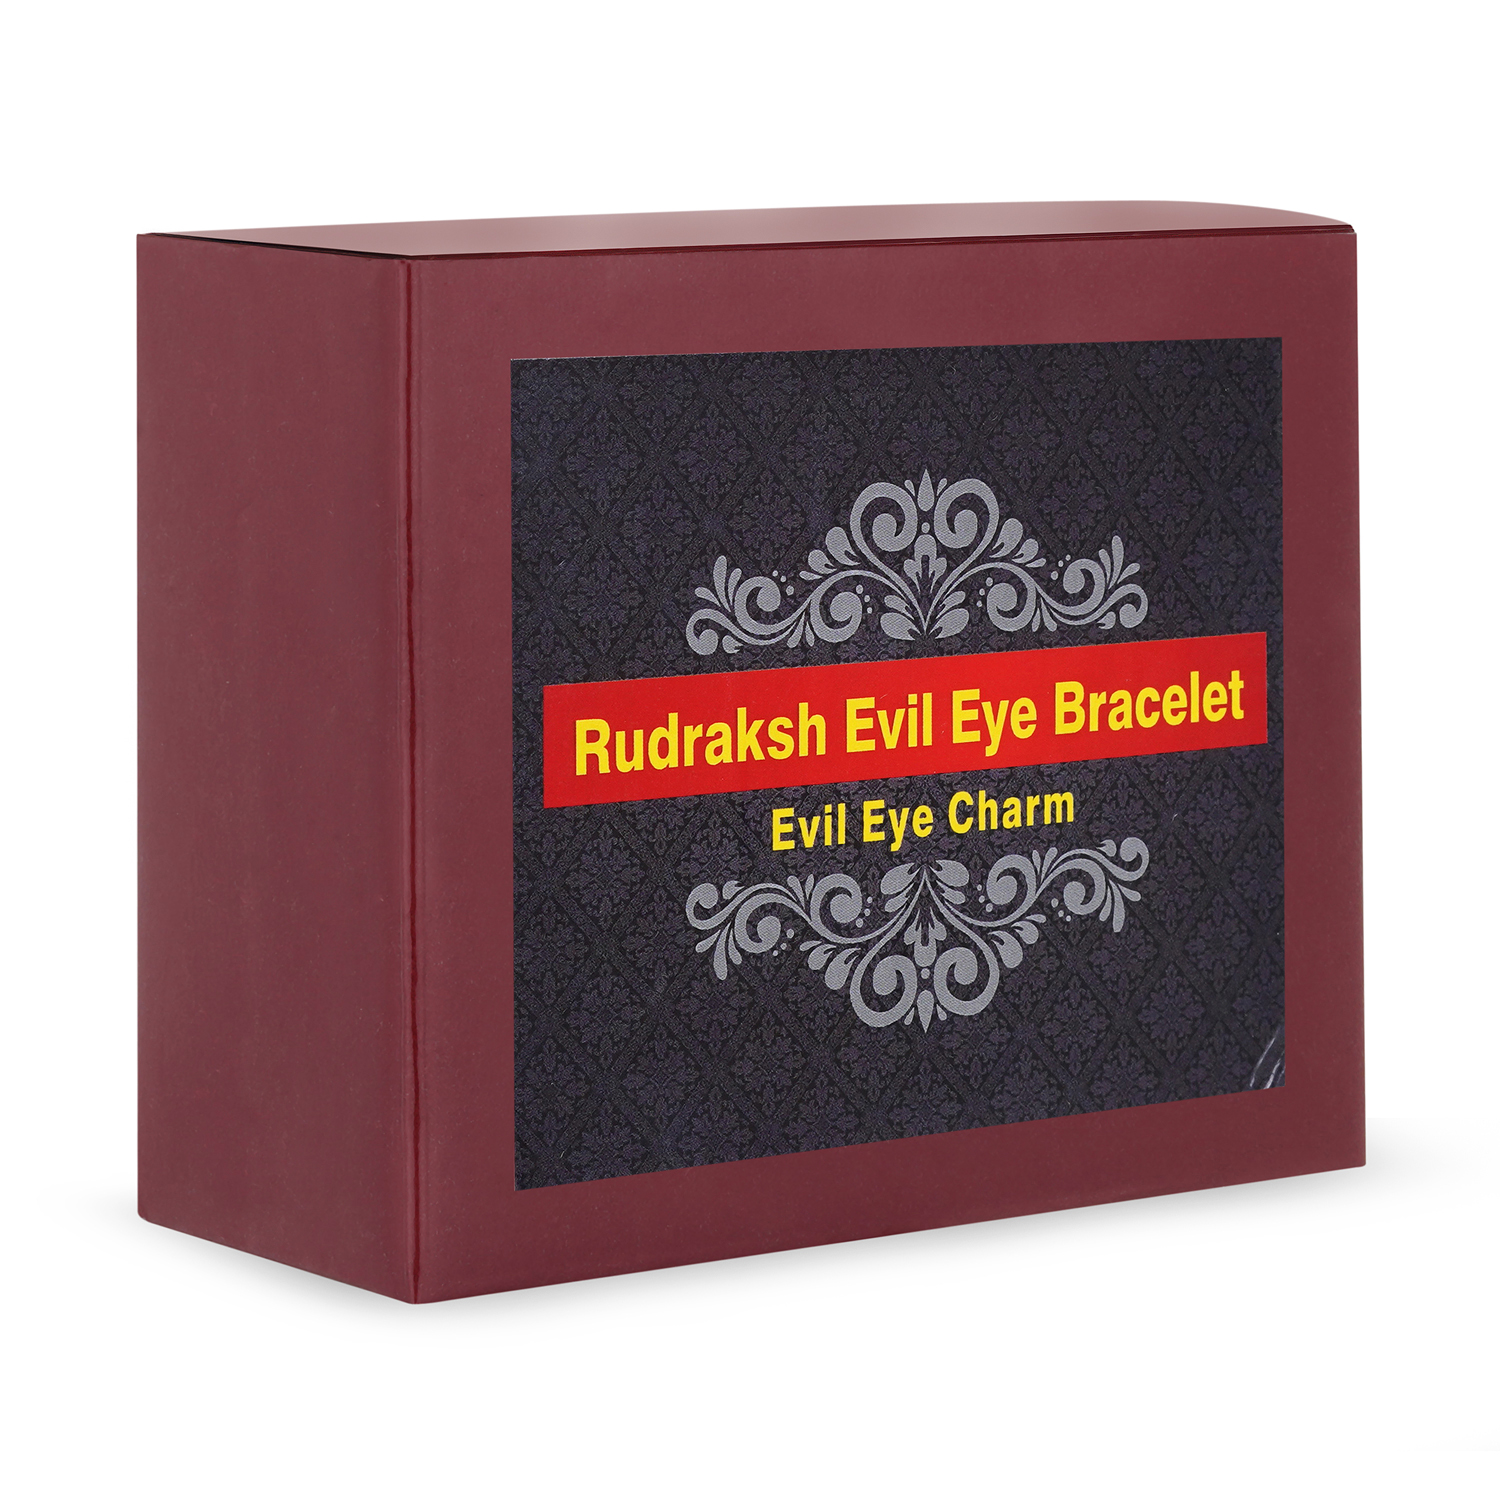 Rudraksh evil eye bracelet